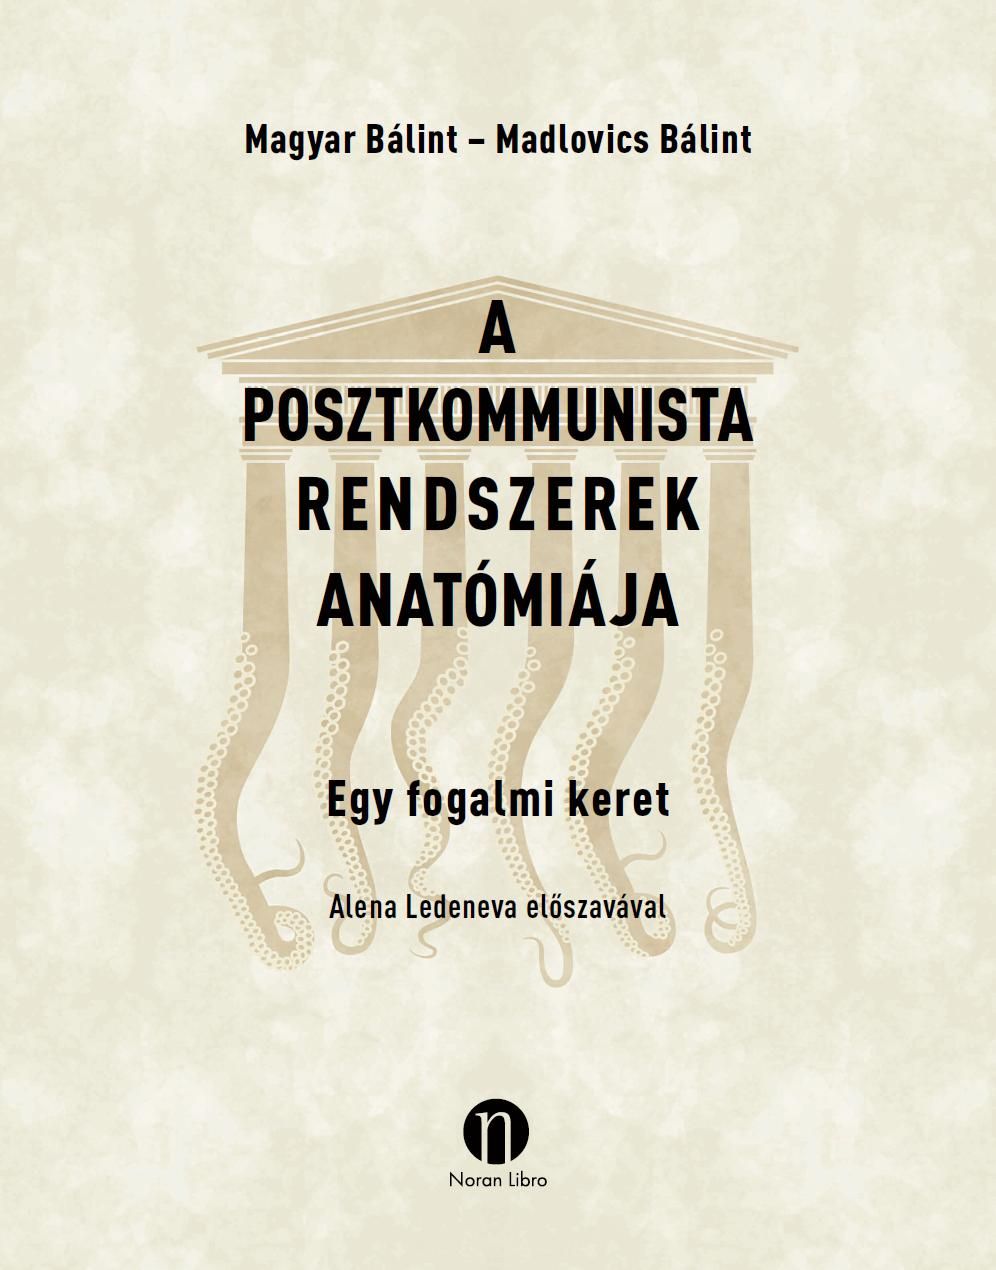 A posztkommunista rendszerek anatómiája - egy fogalmi keret